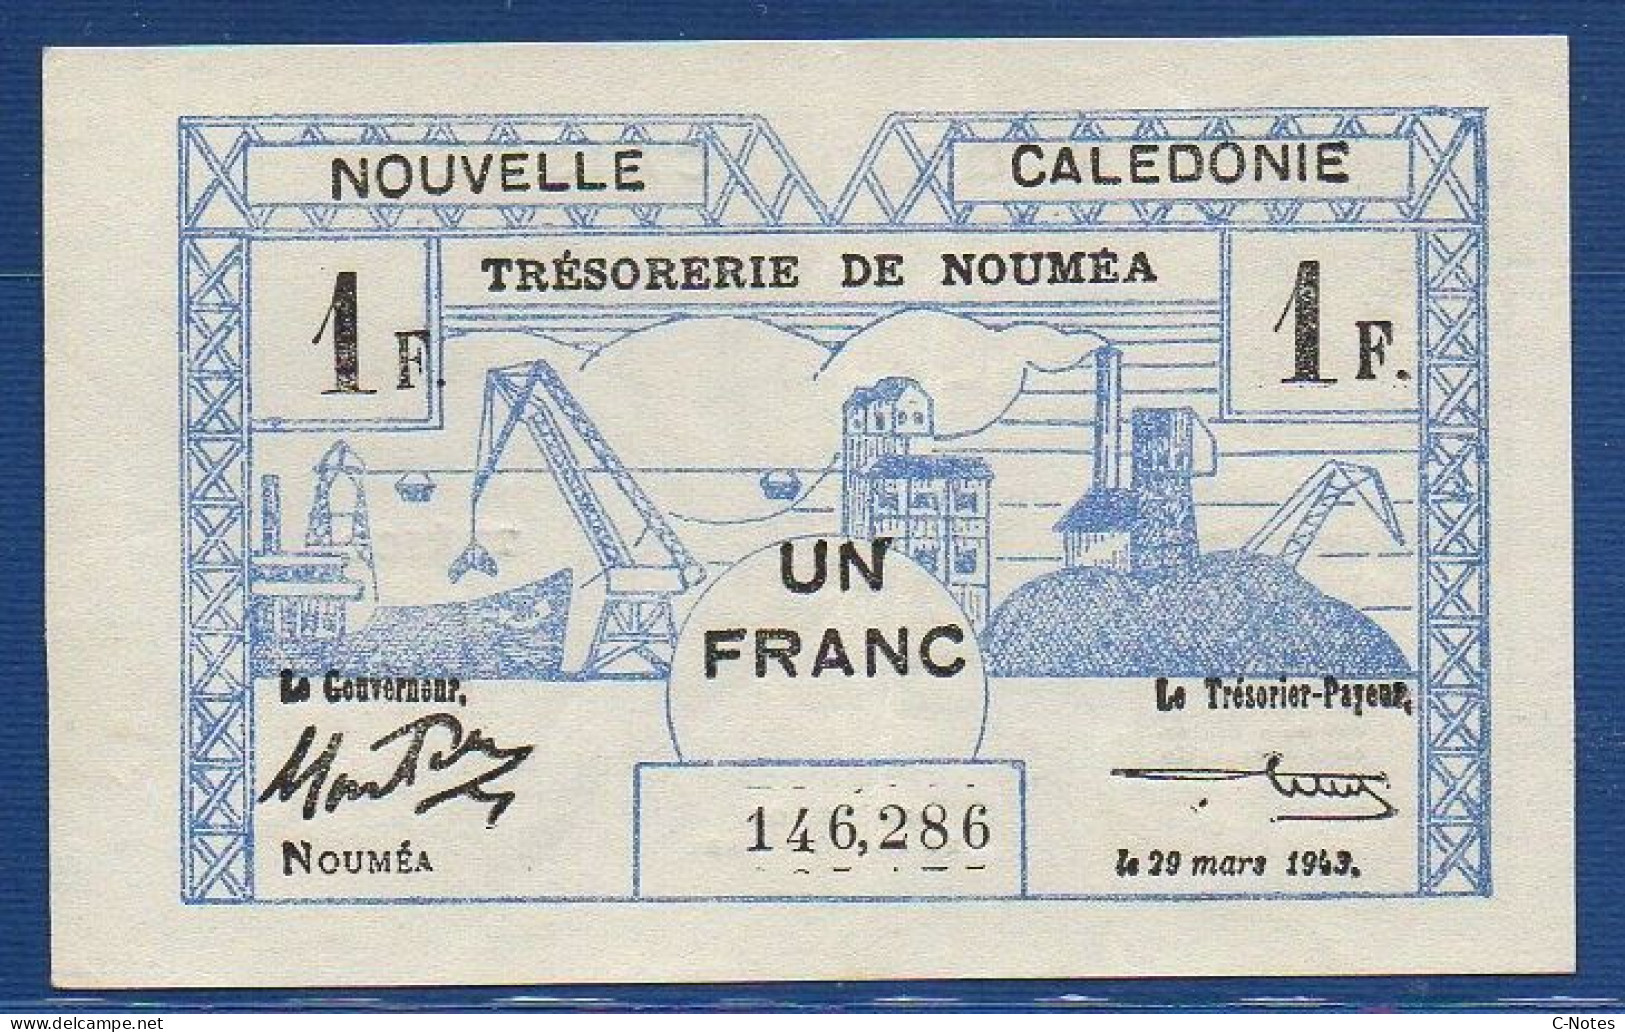 NEW CALEDONIA - Nouméa  - P.55a – 1 Franc 1943 XF/AU, S/n 146,286 - Nouméa (Neukaledonien 1873-1985)